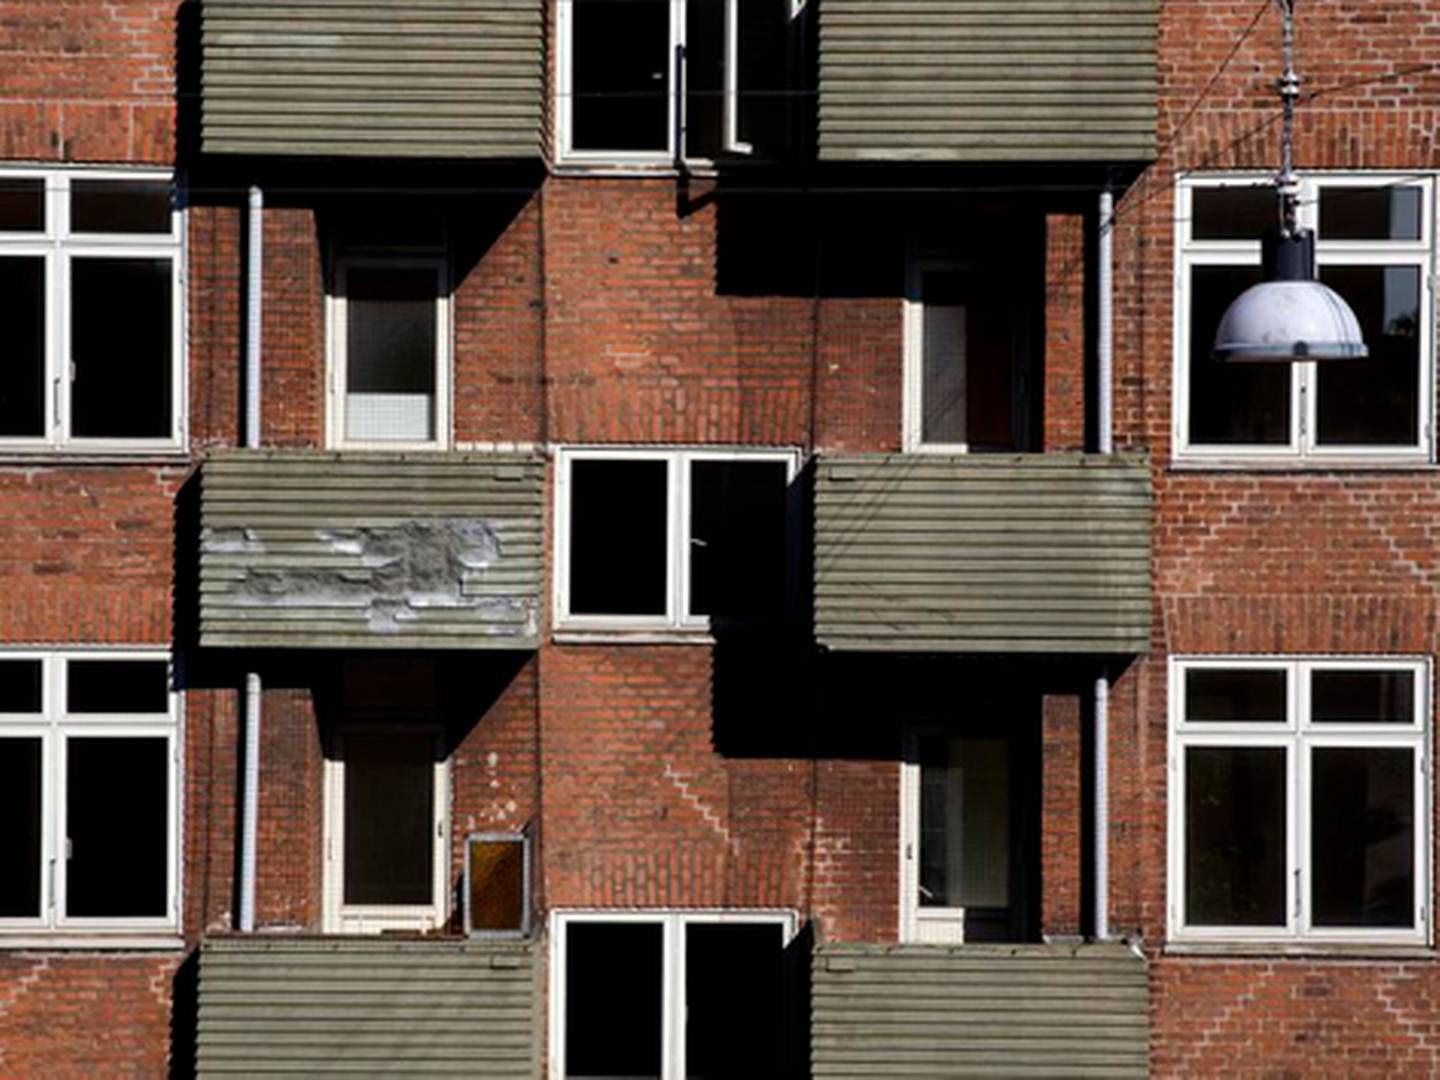 65 internationale studerende fik i juli besked på at flytte fra deres boliger i Tranehavegård i Københavns Sydhavn med to ugers varsel. En tredjedel af dem havde kontrakter, der løb til efteråret eller foråret 2017. | Foto: Ritzau Scanpix/Jacob Ehrbahn